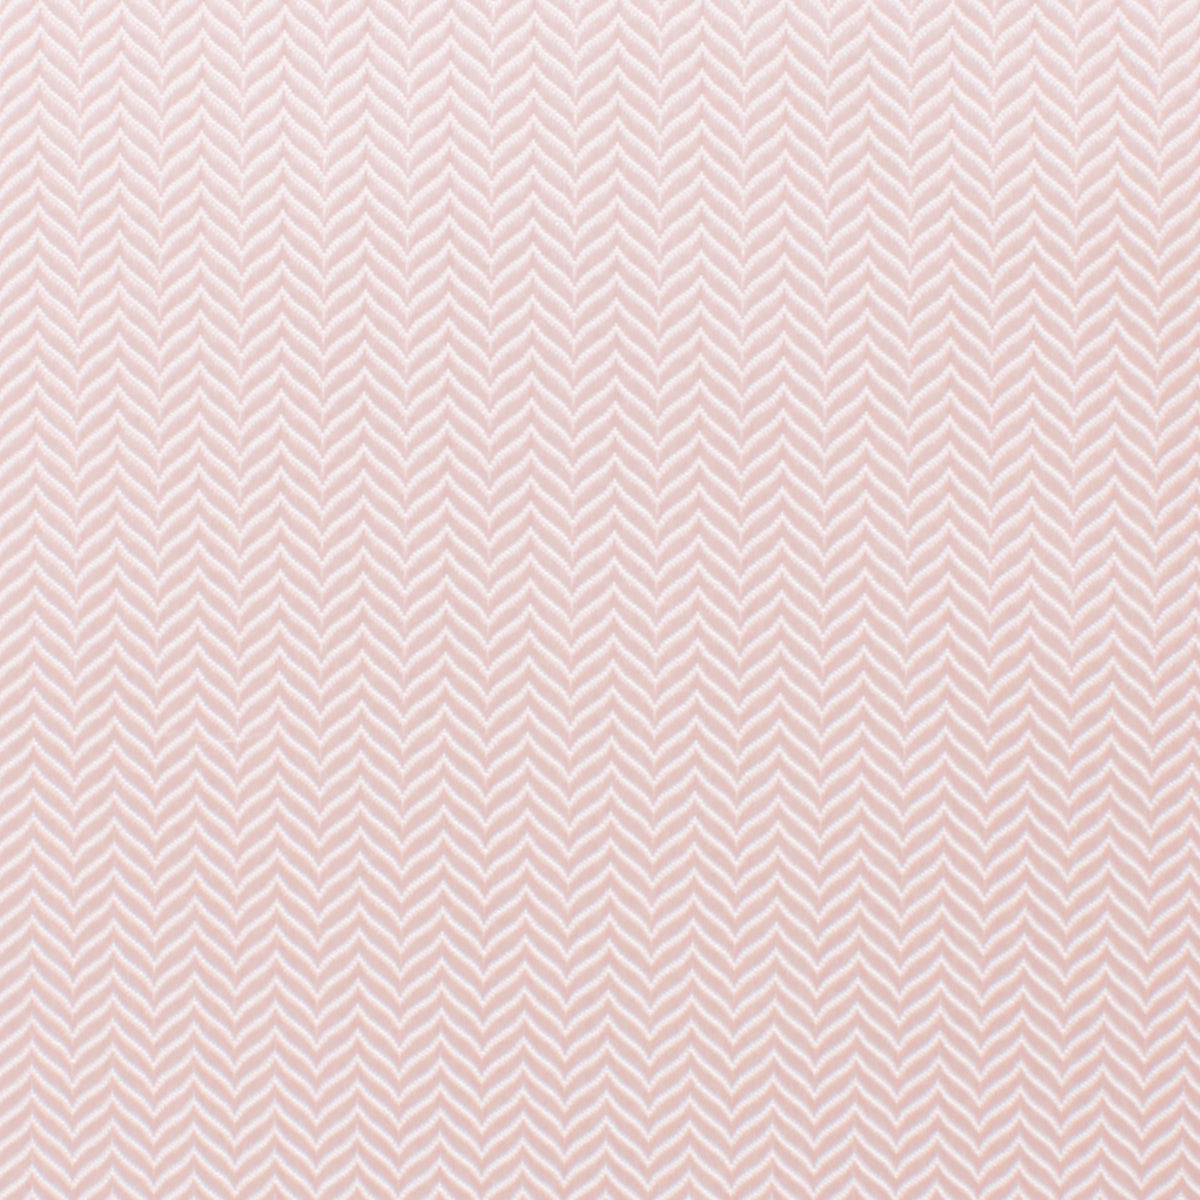 Blush Pink Herringbone Bow Tie Fabric